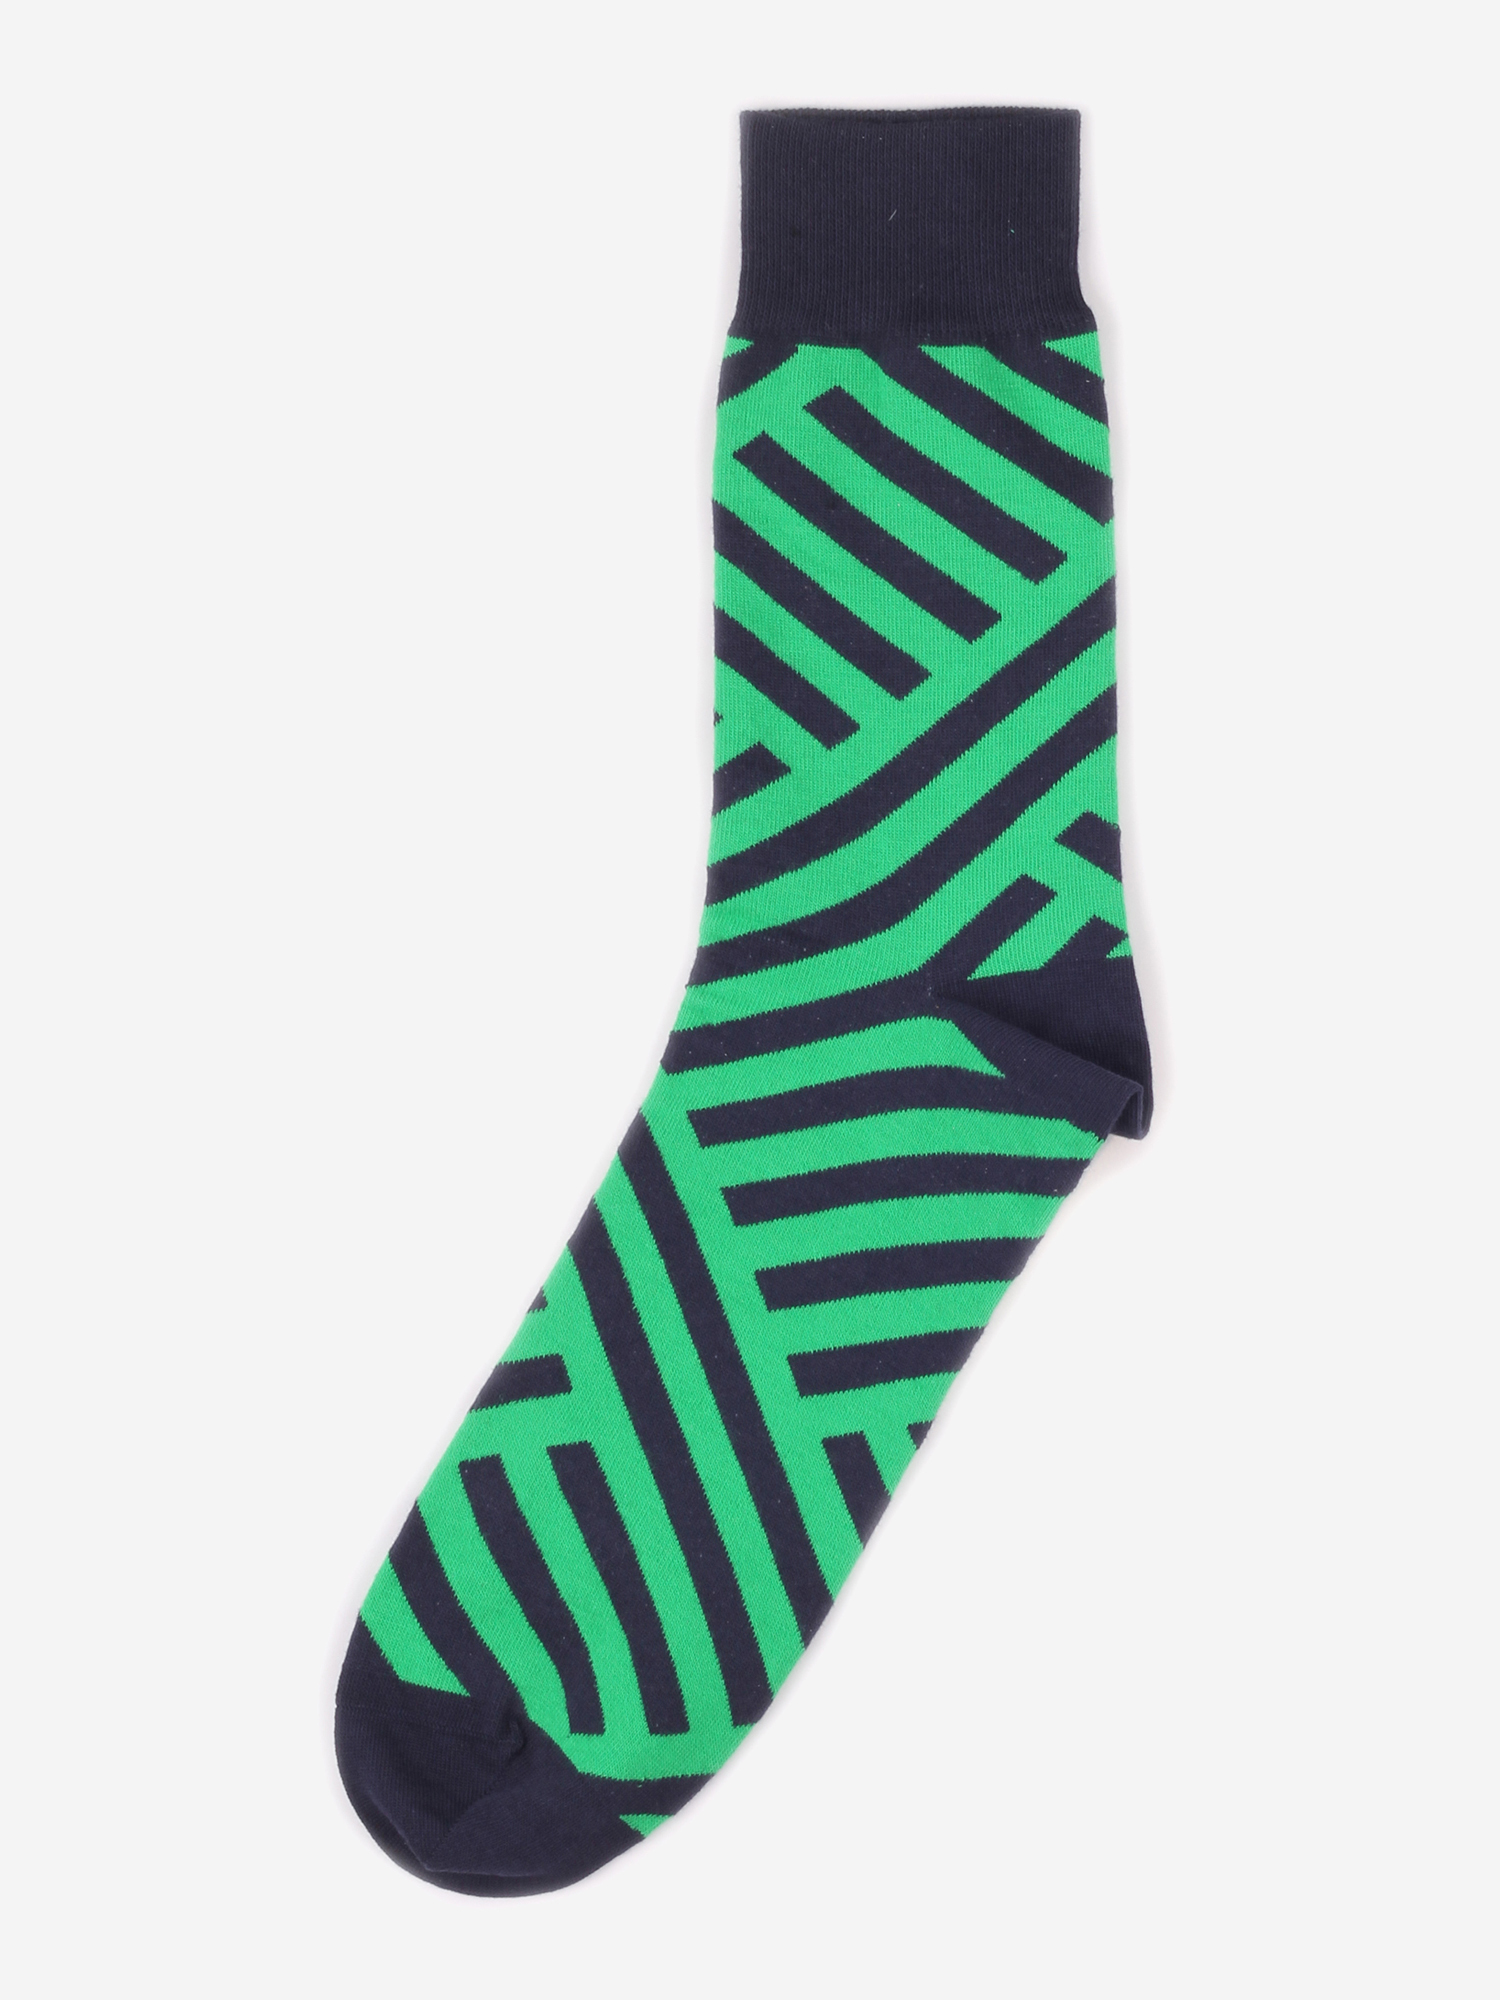 Дизайнерские носки Burning Heels - Diagonal Stripes - Green/Black, Зеленый